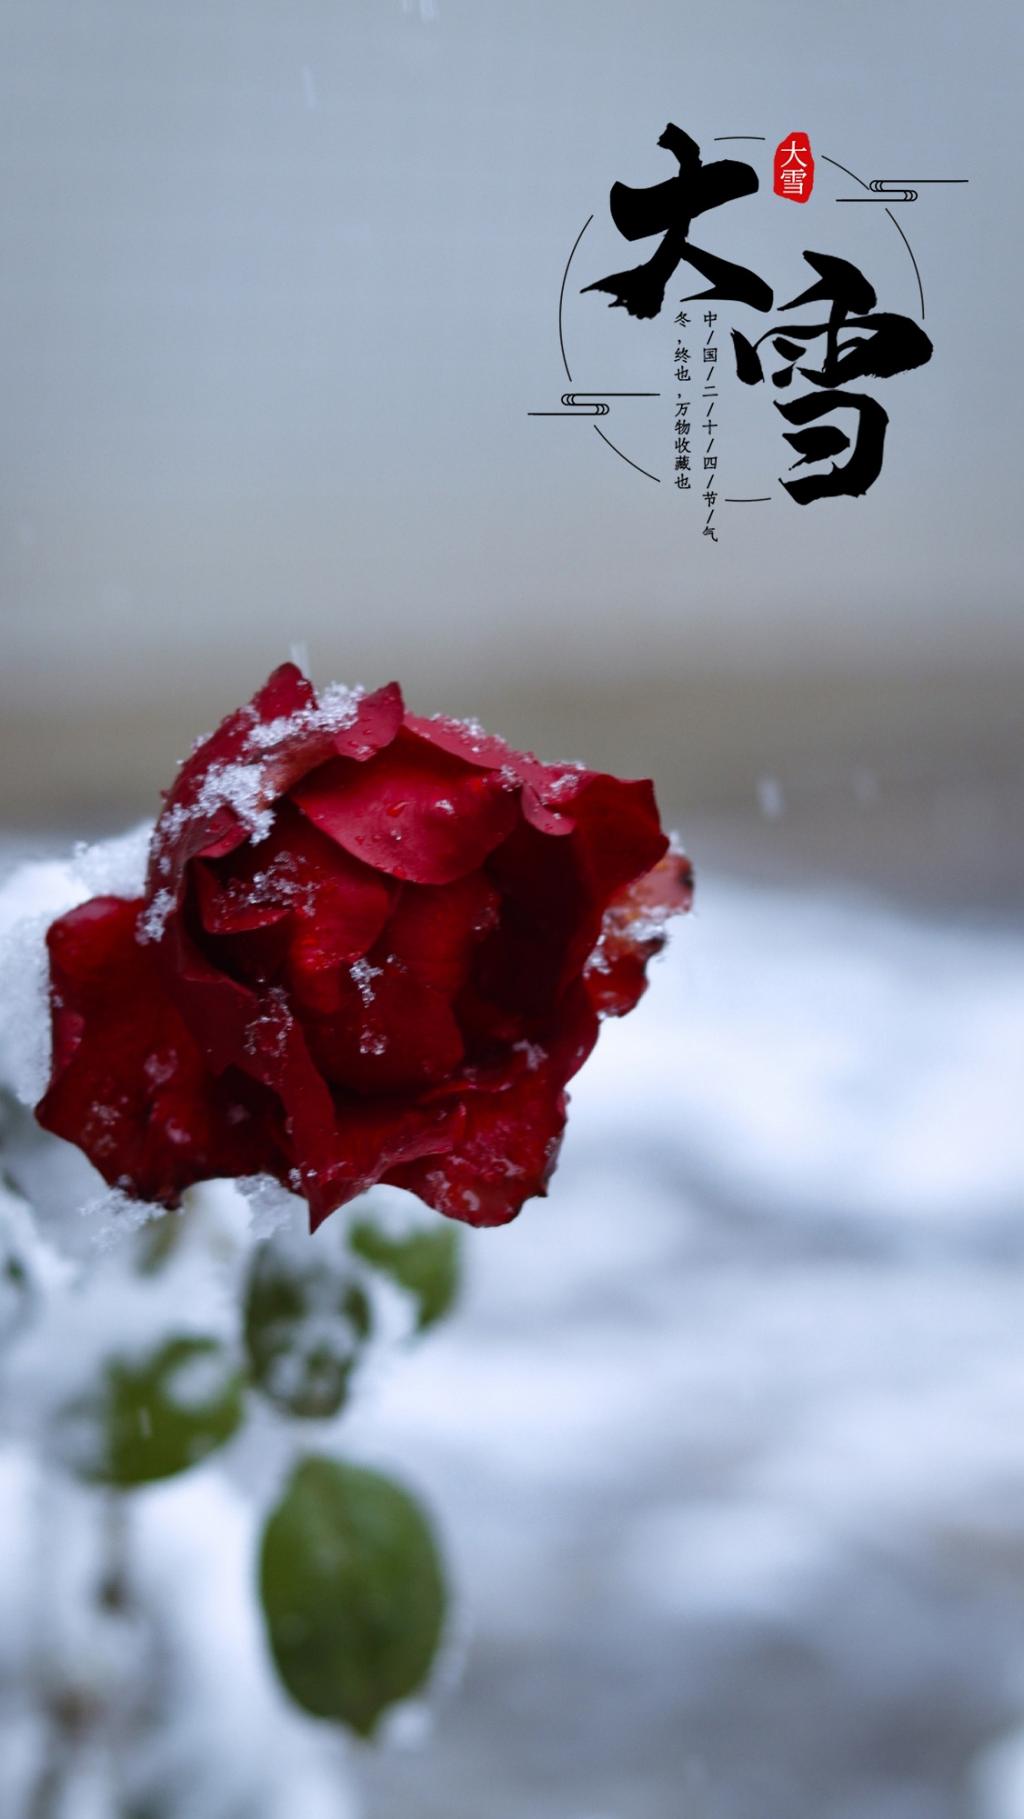 二十四节气之大雪玫瑰